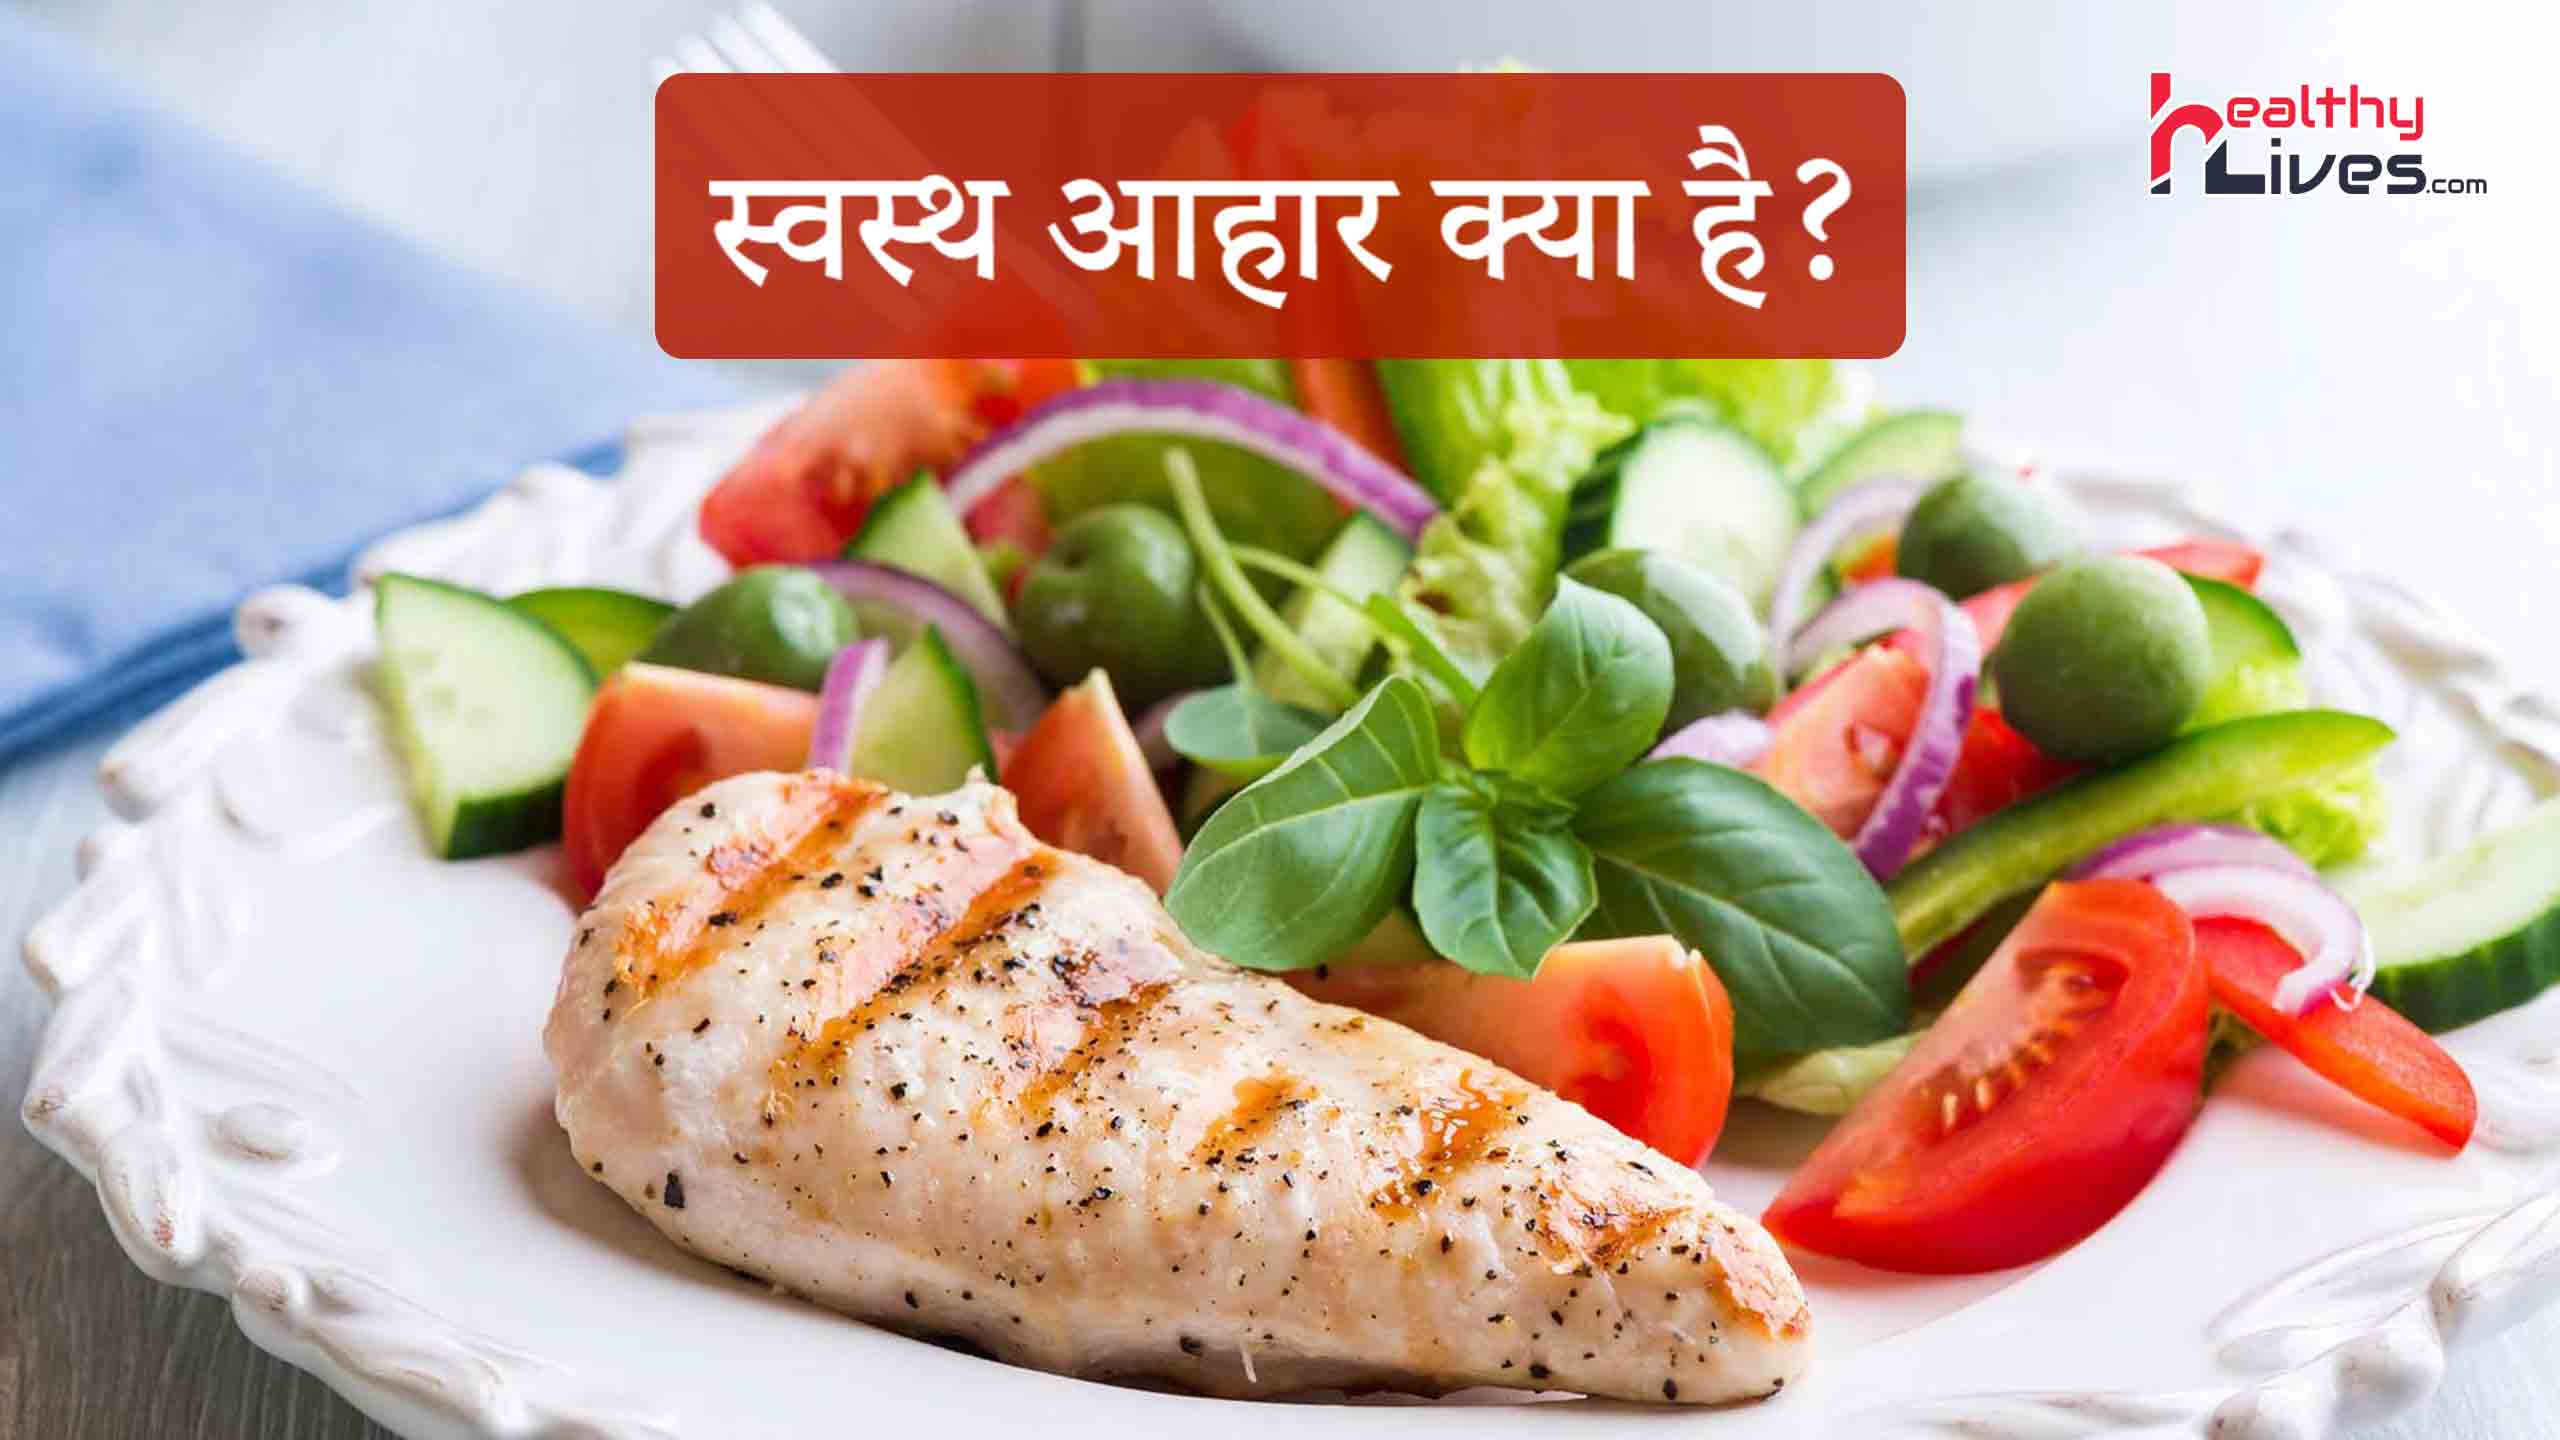 Balanced Diet in Hindi: स्वस्थ शरीर के लिए लें संतुलित आहार